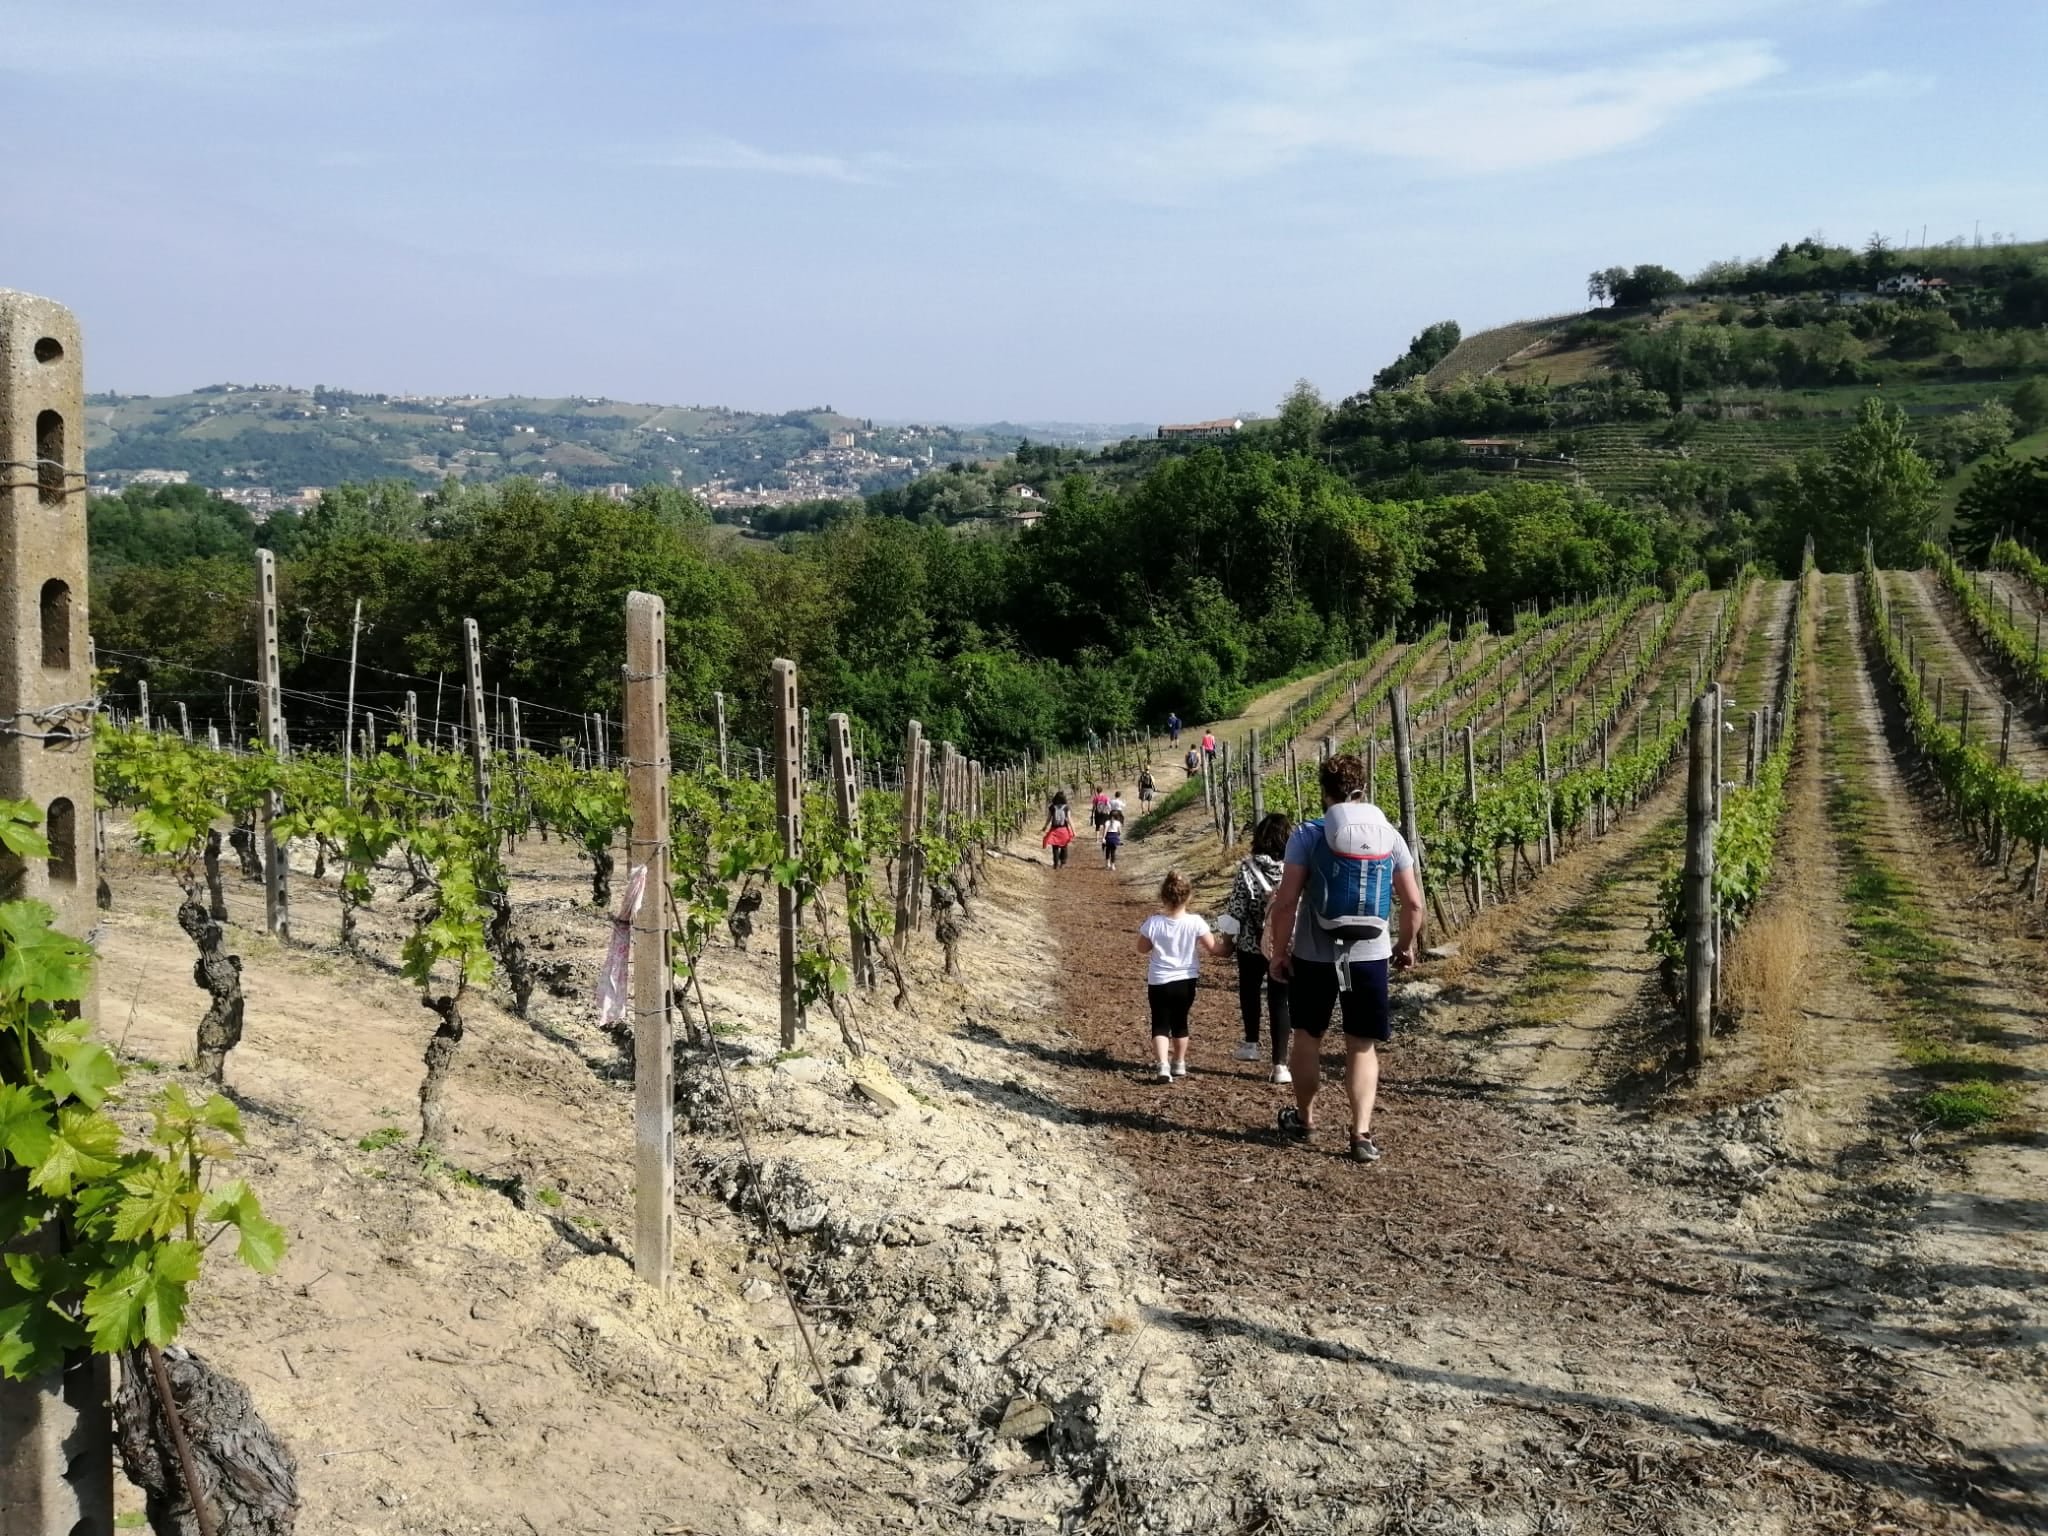 Tra vigne e dolci pendii una storia lunga 300 km quella raccontata dal Grande Cammino del Monferrato